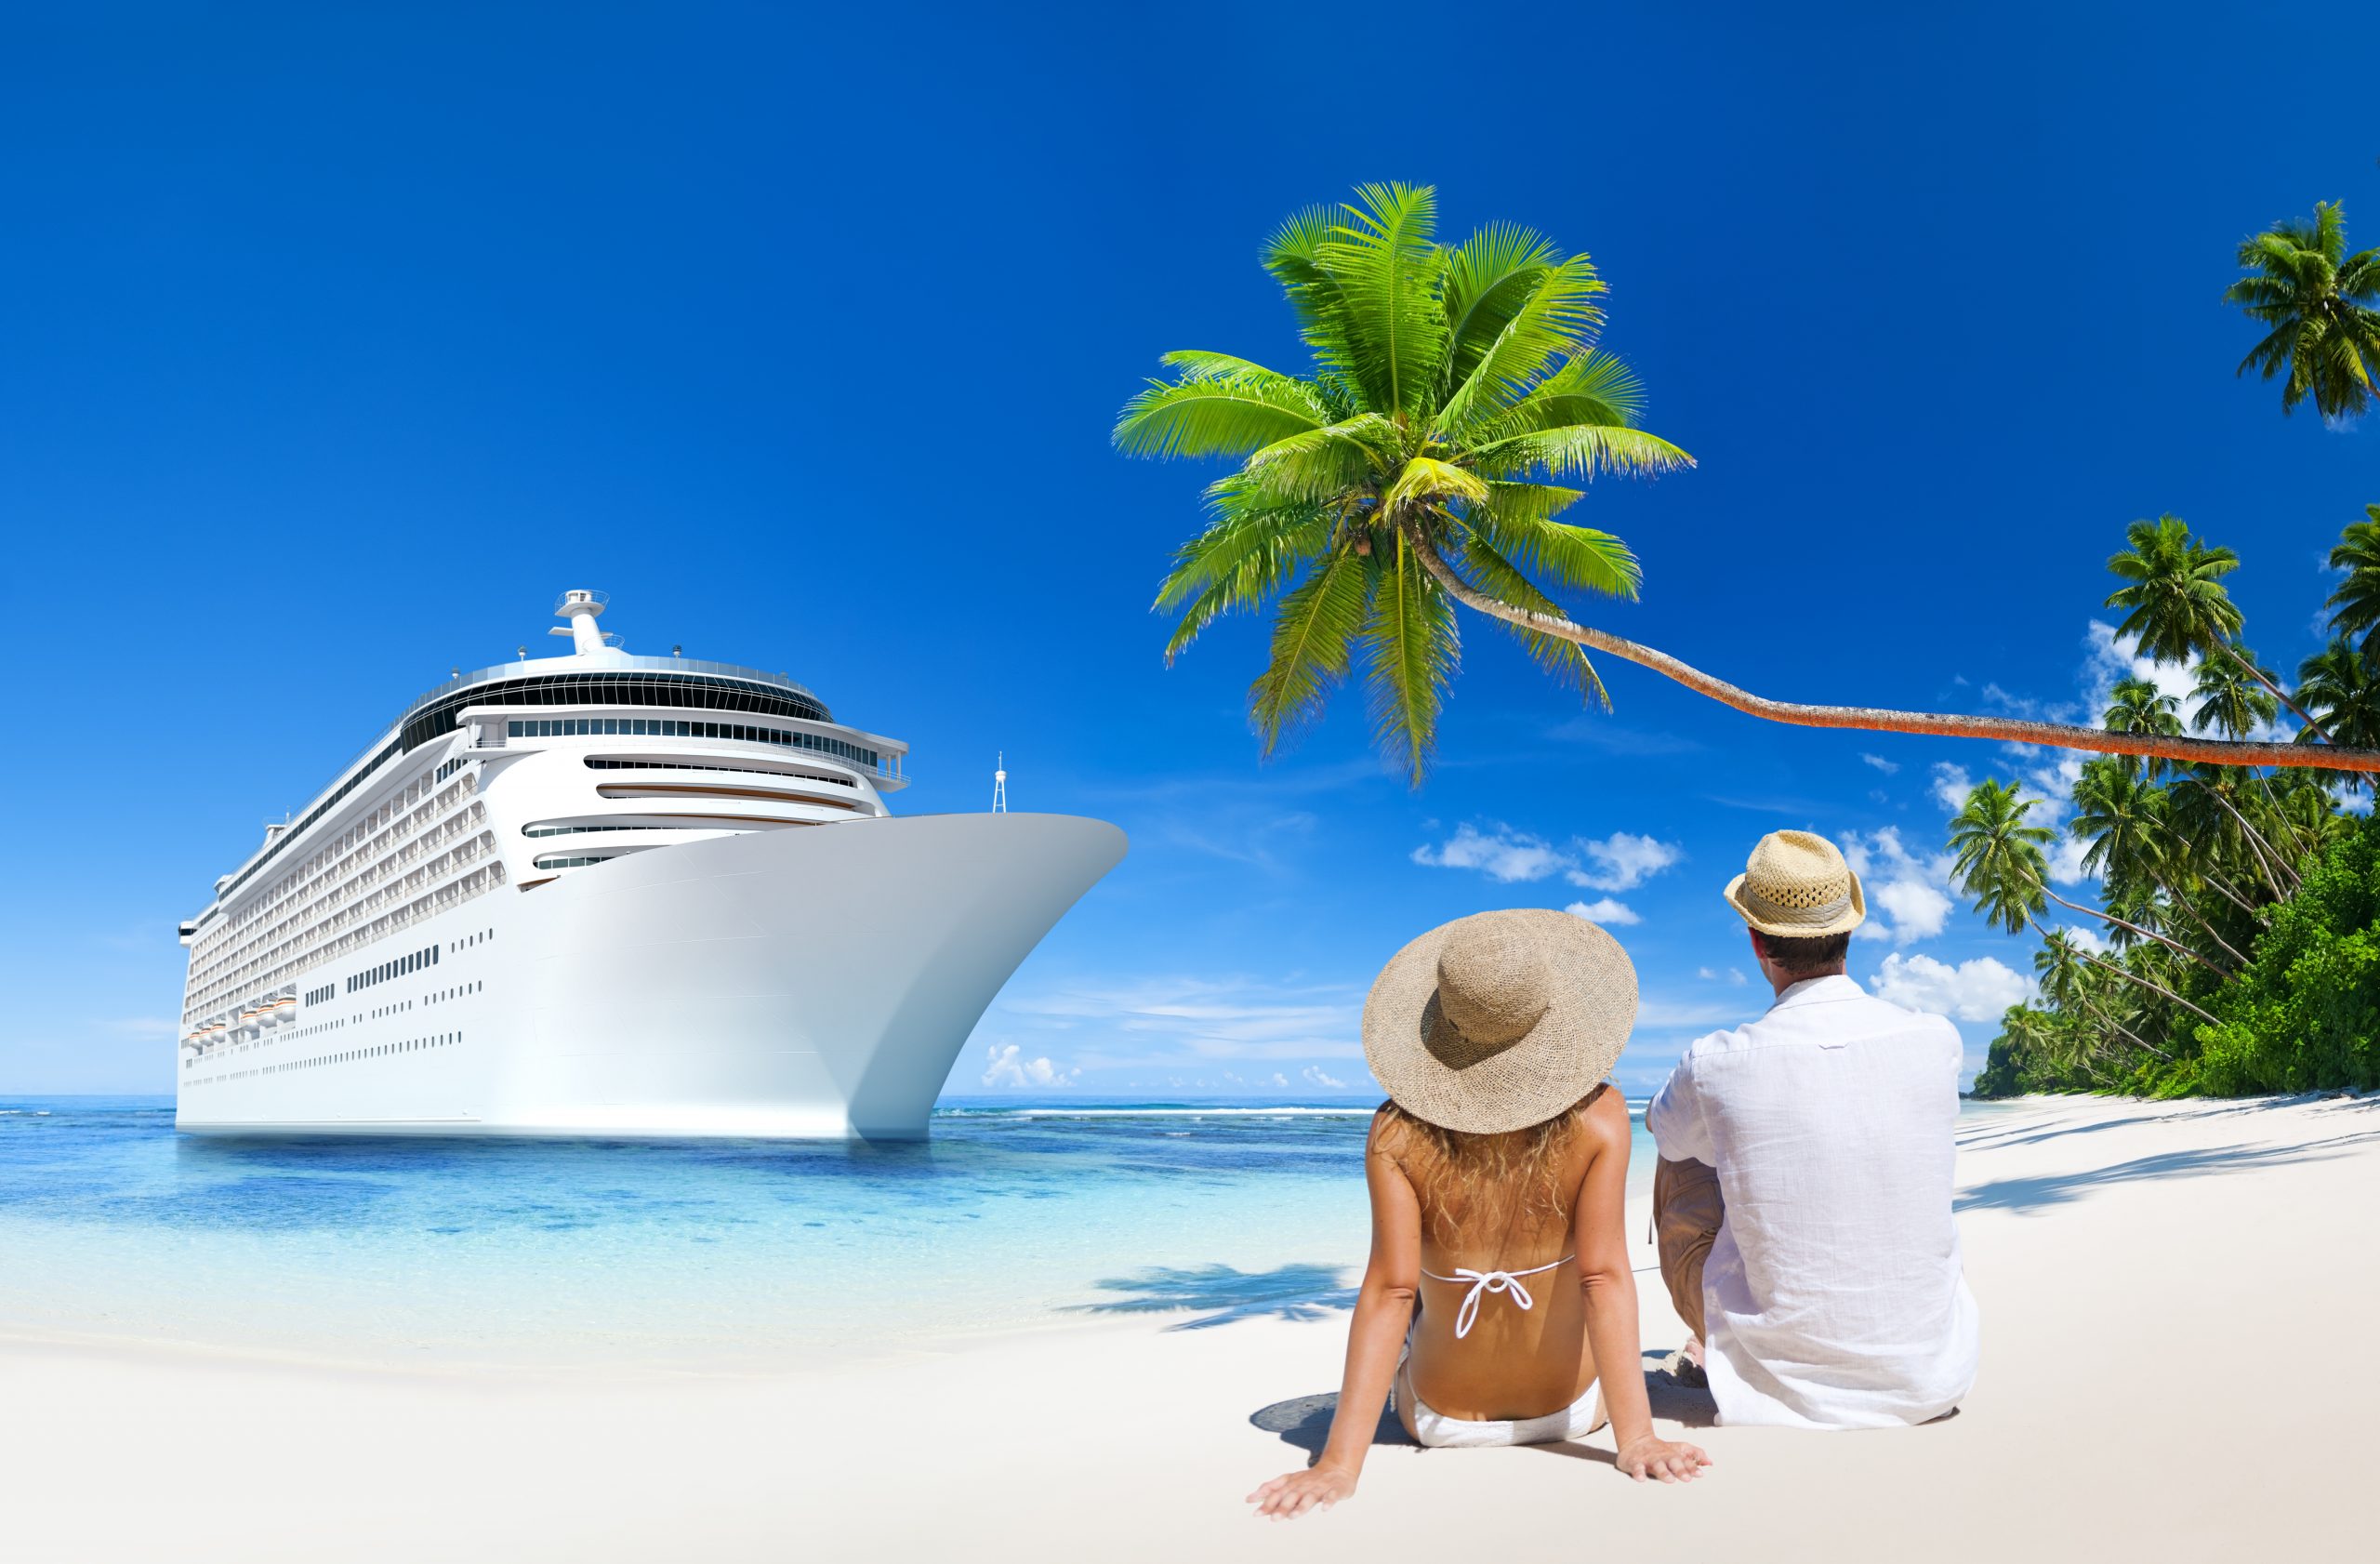 insurance in cruise ship